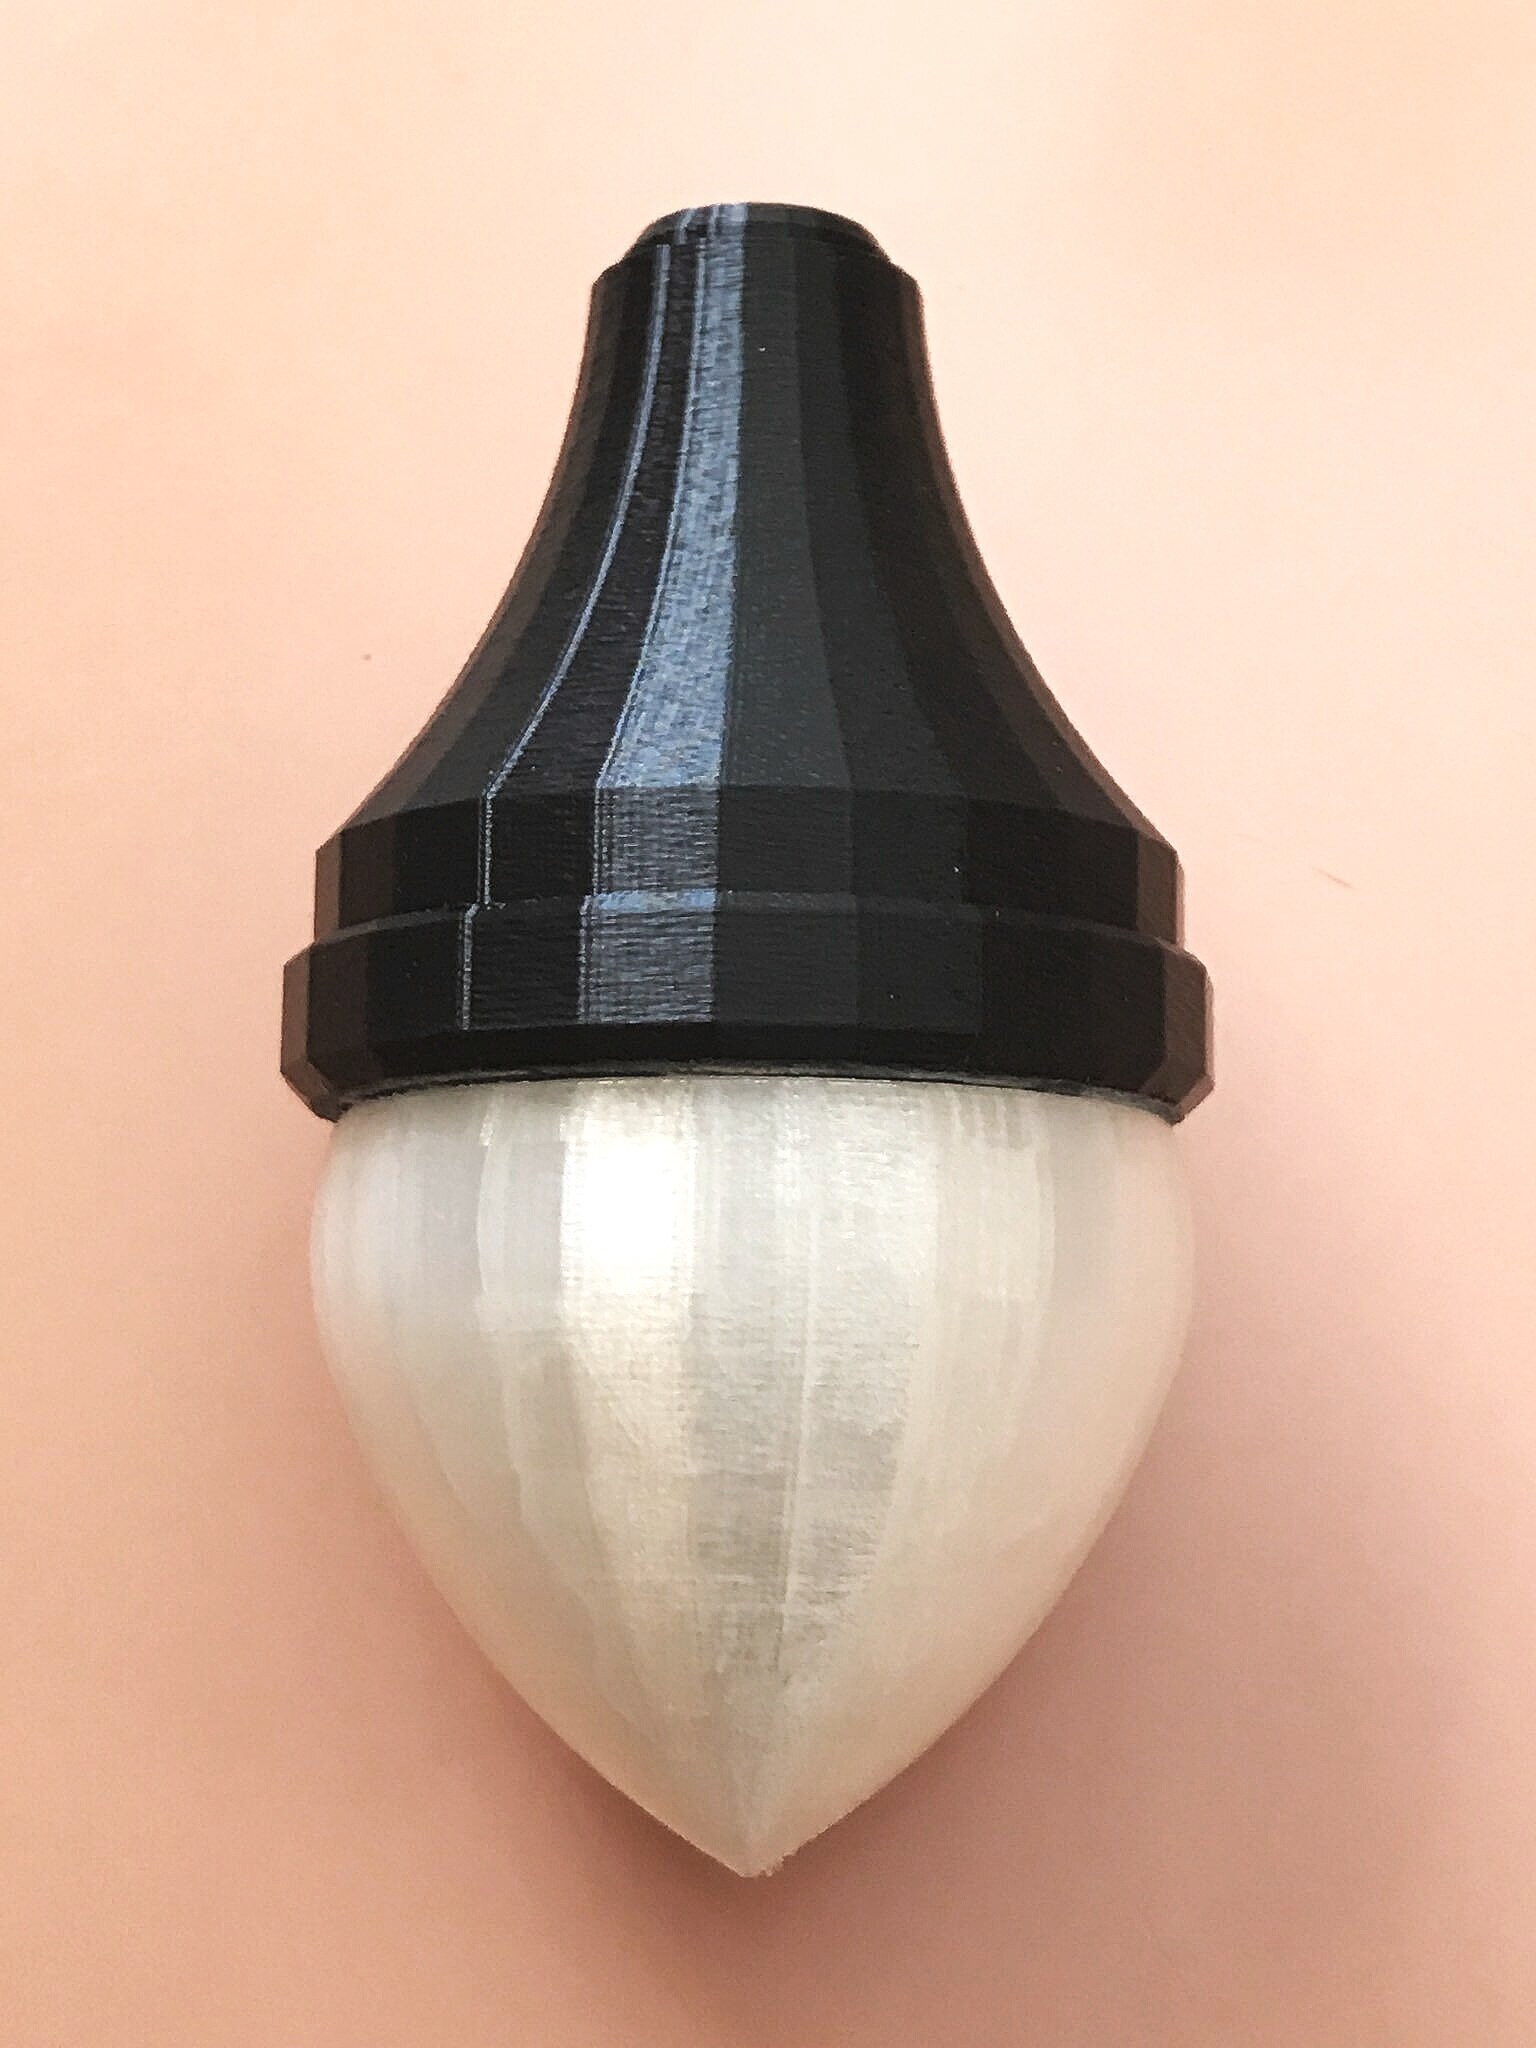 3D printed miniature lamp posts